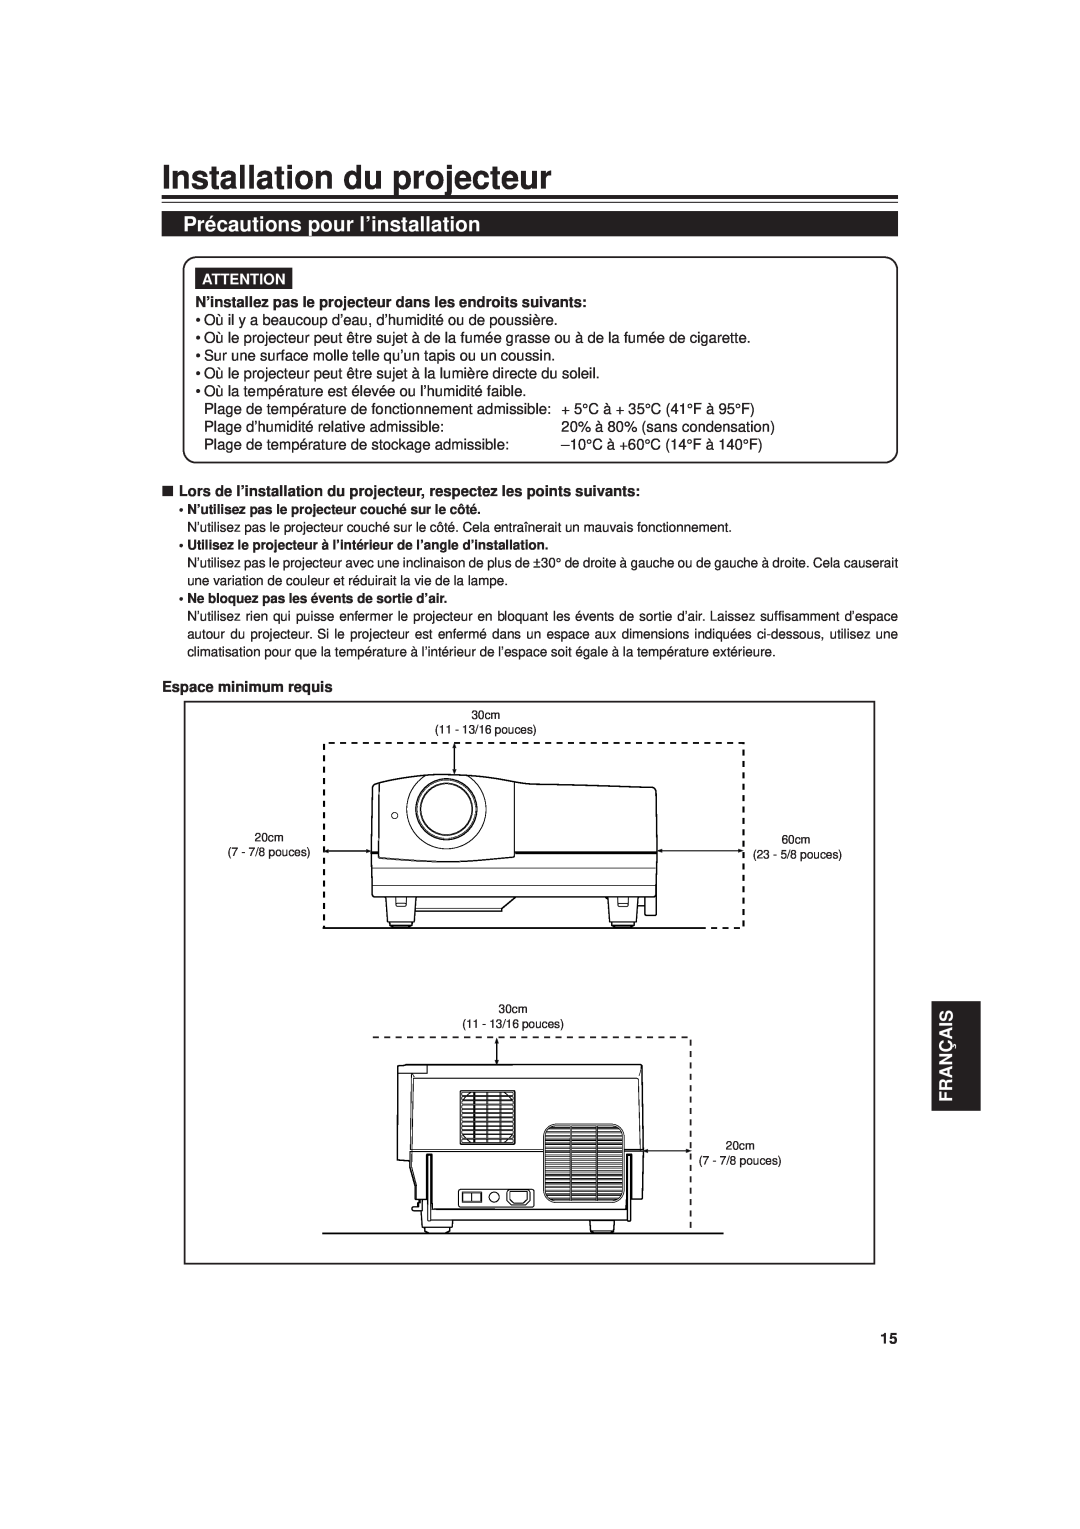 JVC DLA-G20U manual Installation du projecteur, Précautions pour l’installation, Français, Espace minimum requis 